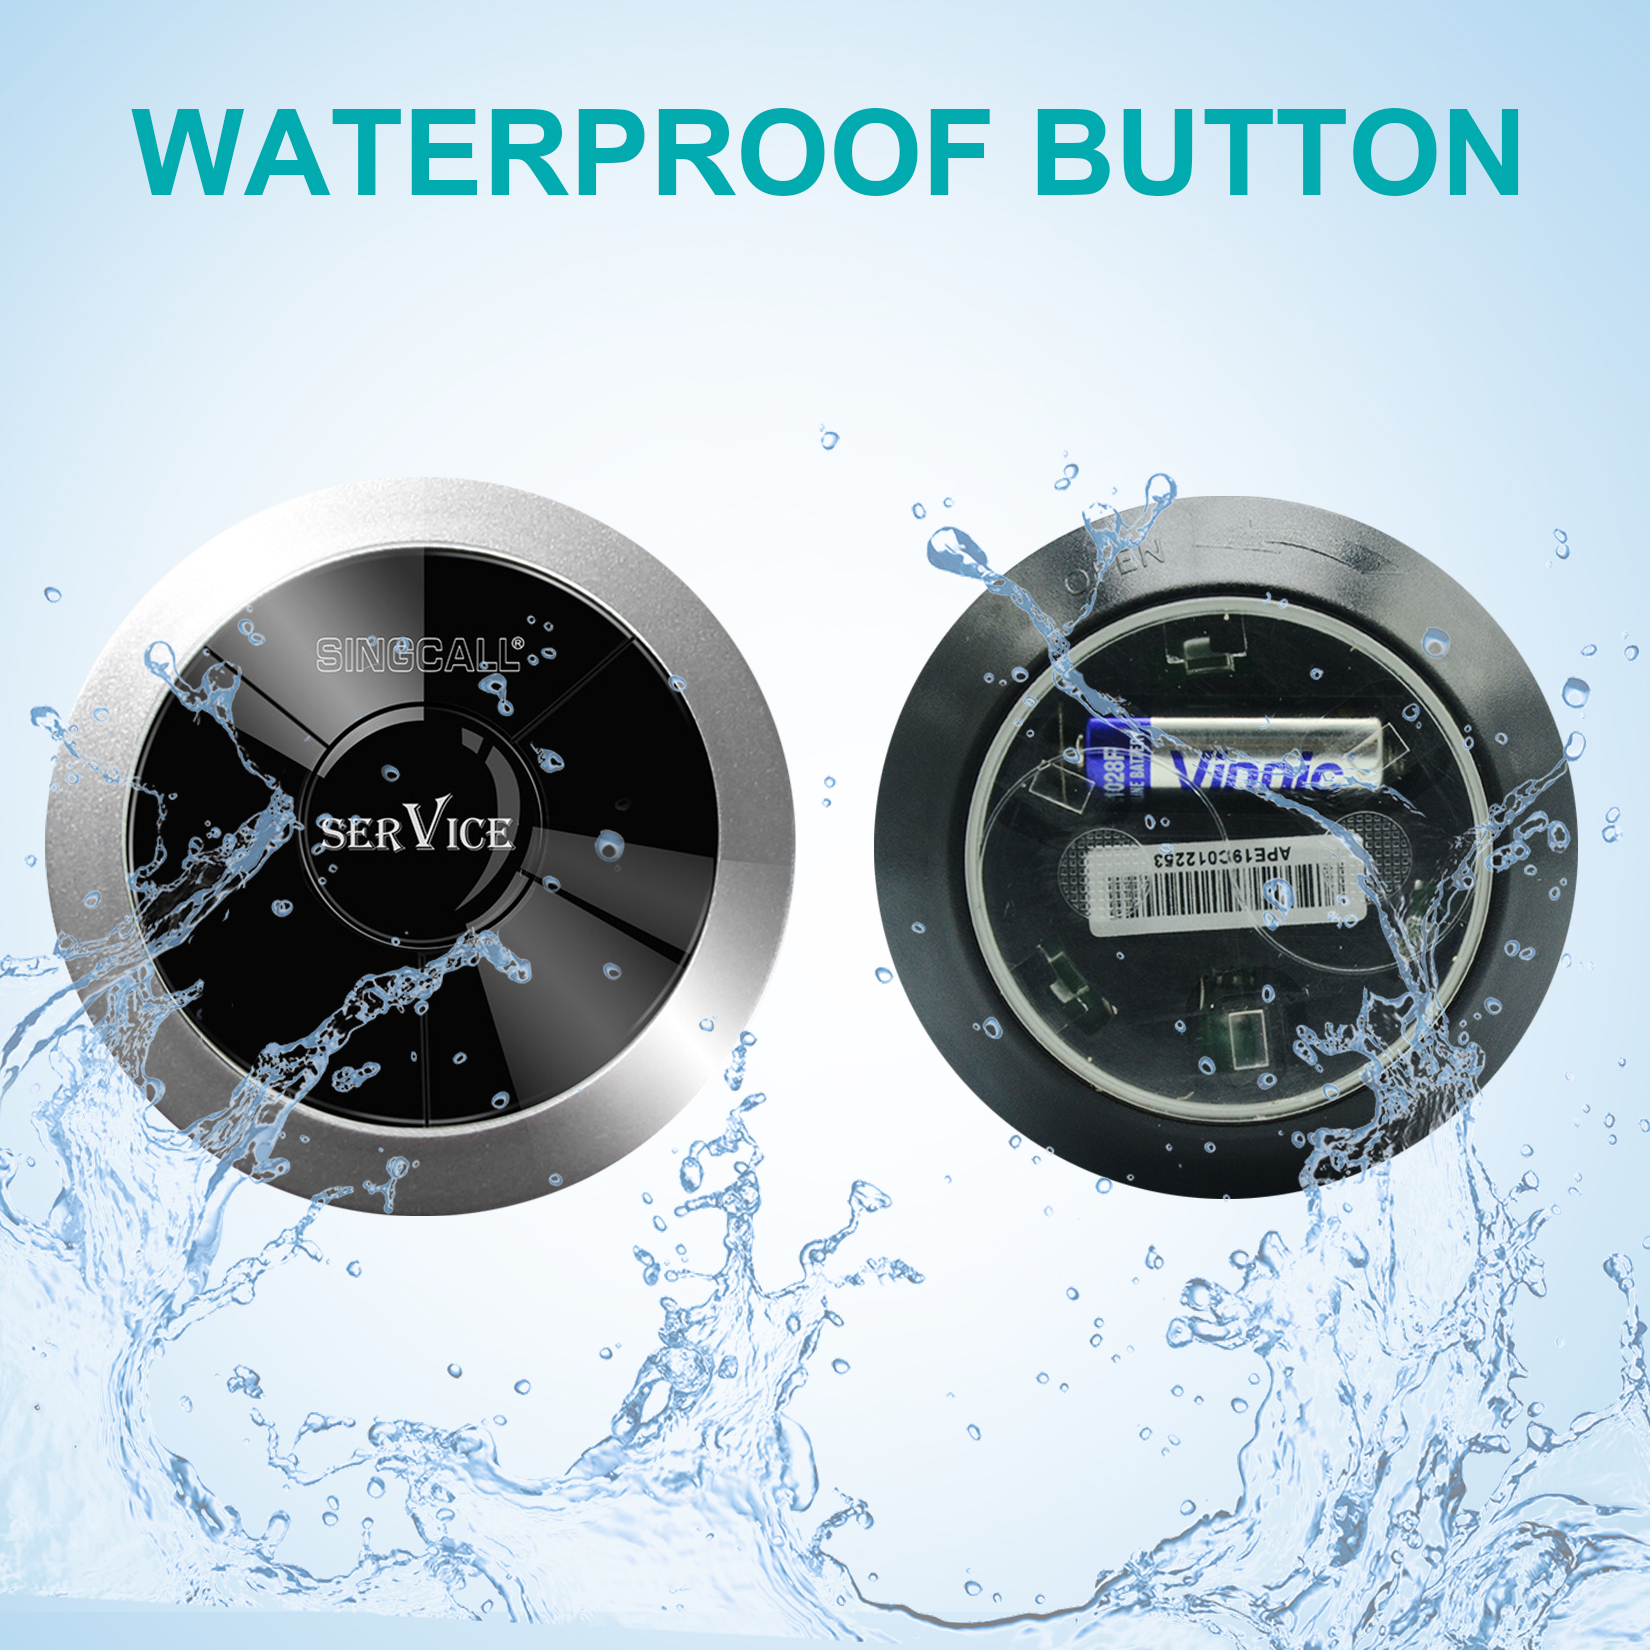 waterproof button